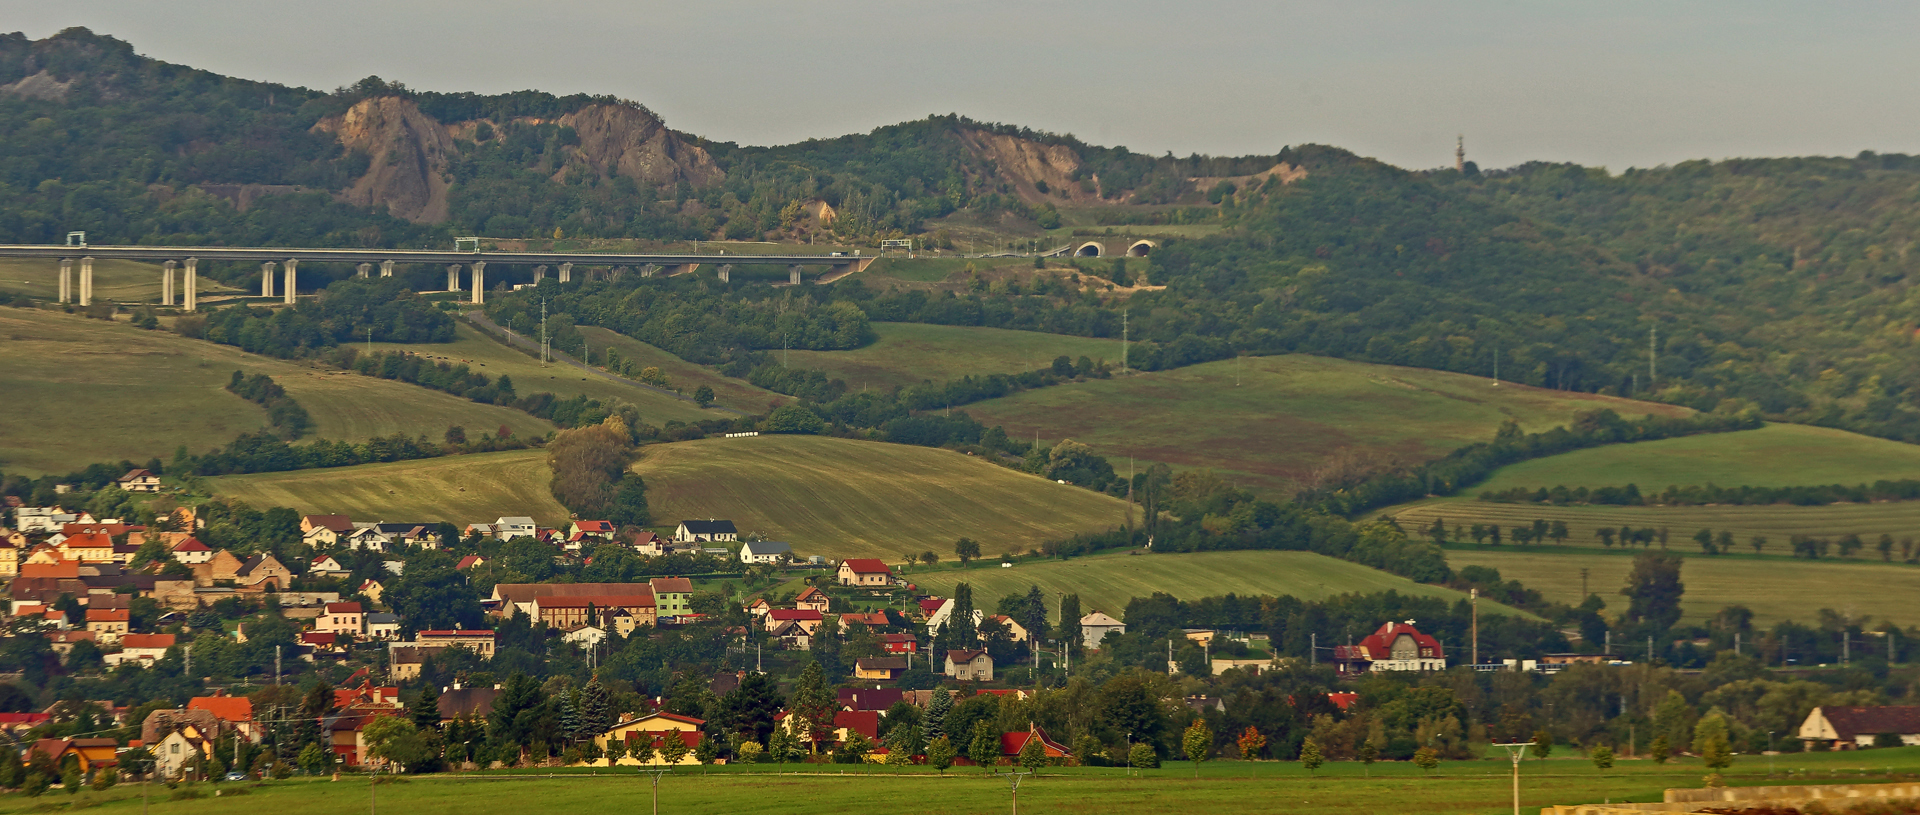 Dort wo die Autobahn nach Prag aus dem Berg kommt...